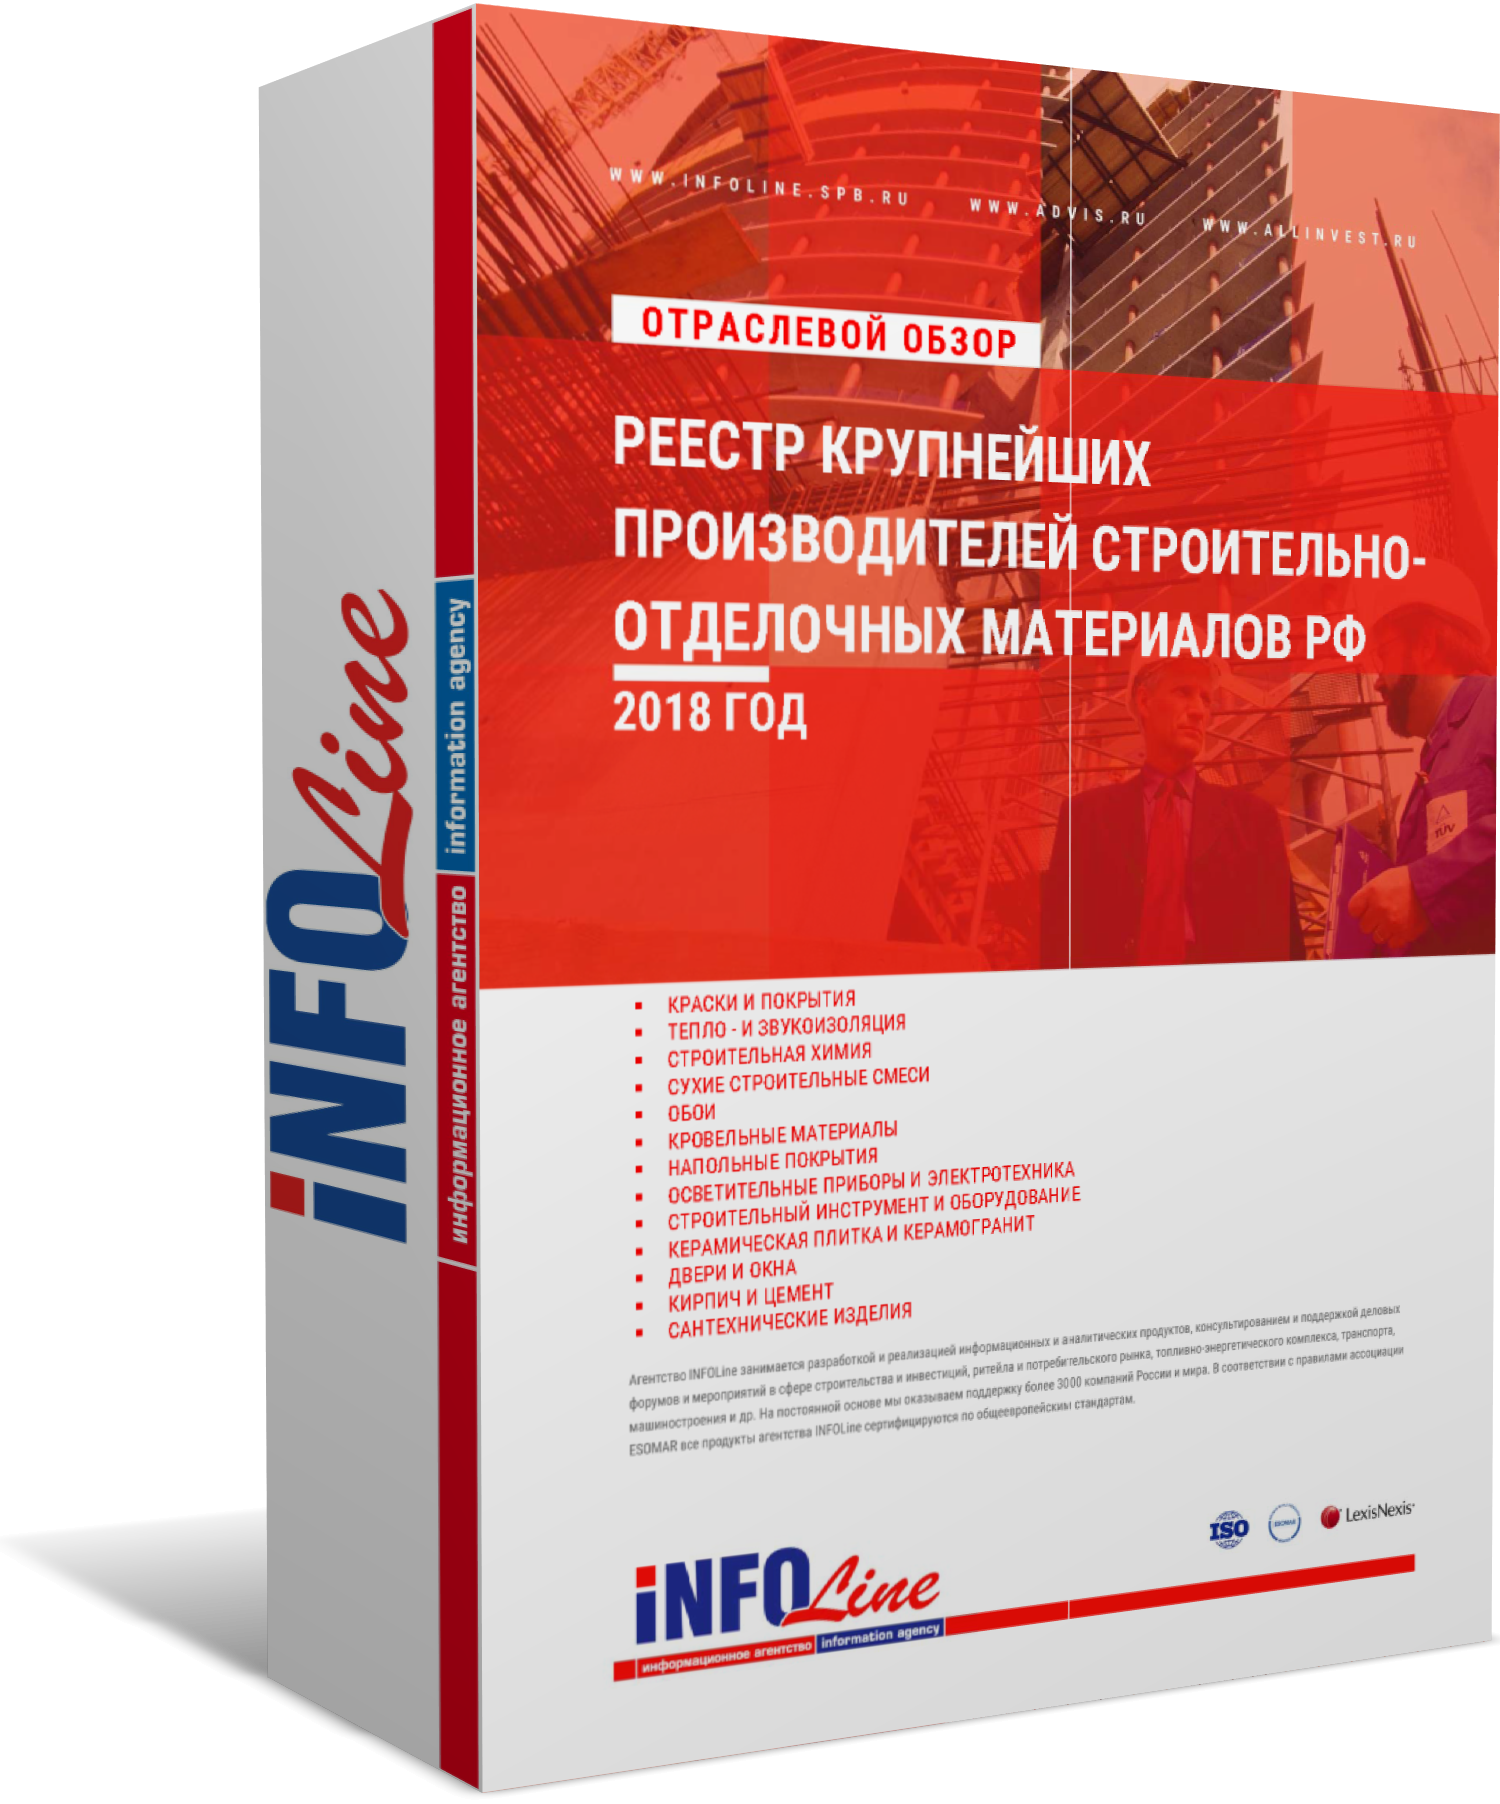 Реестр "Крупнейшие производители строительно-отделочных материалов РФ 2018 года" (доступна обновленная версия)